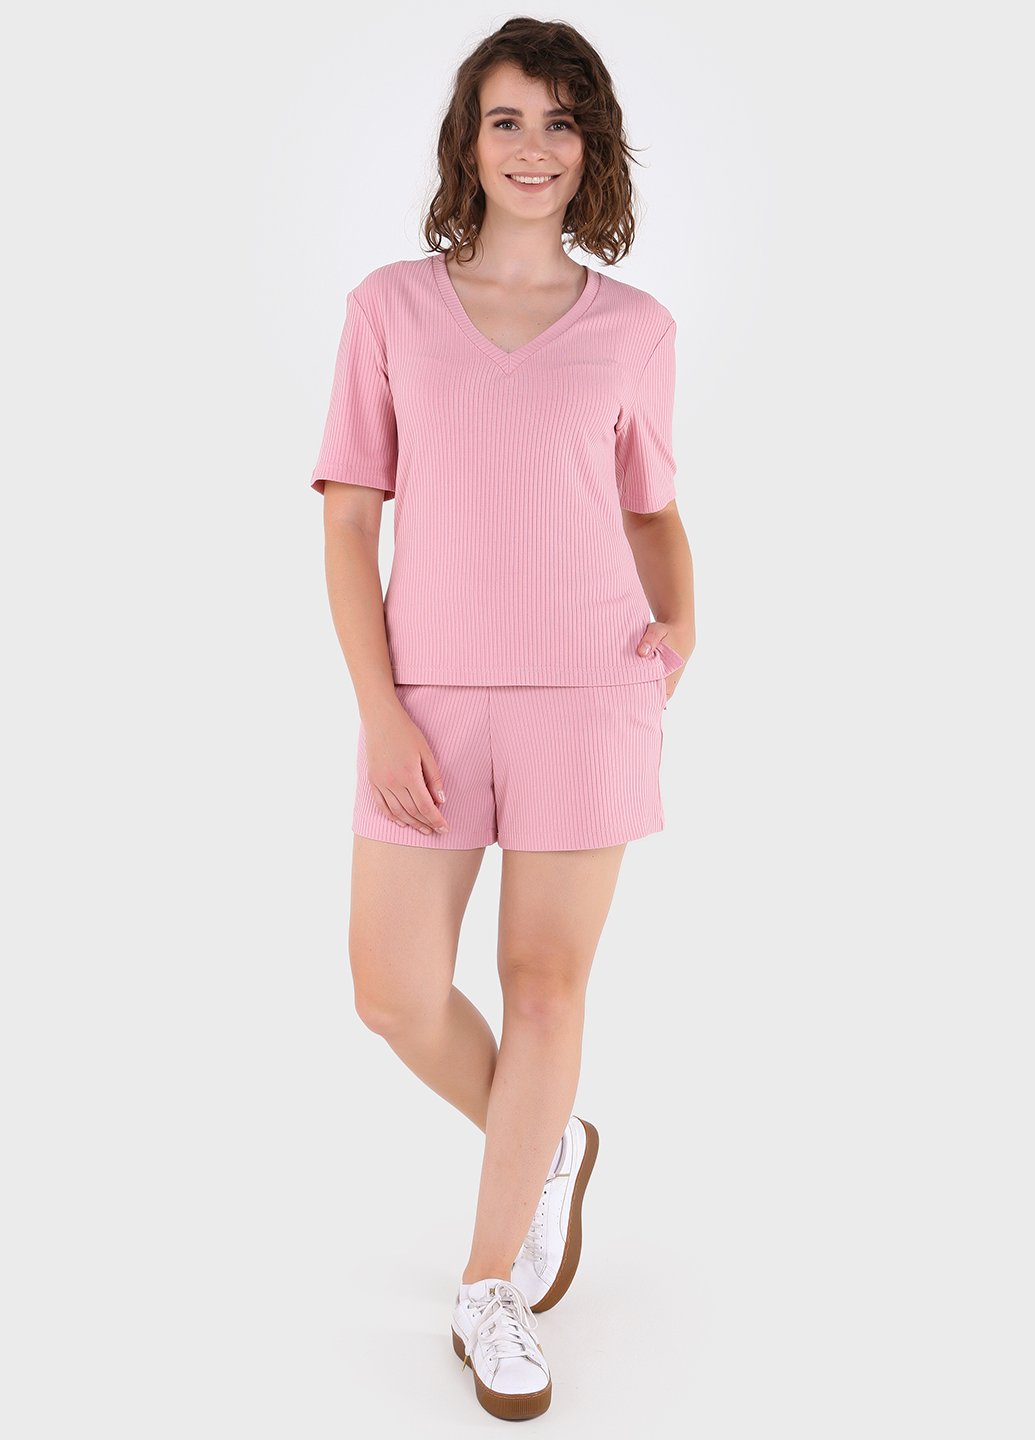 Купить Костюм женский в рубчик розового цвета Merlini Астурия 100000110, размер 42-44 в интернет-магазине